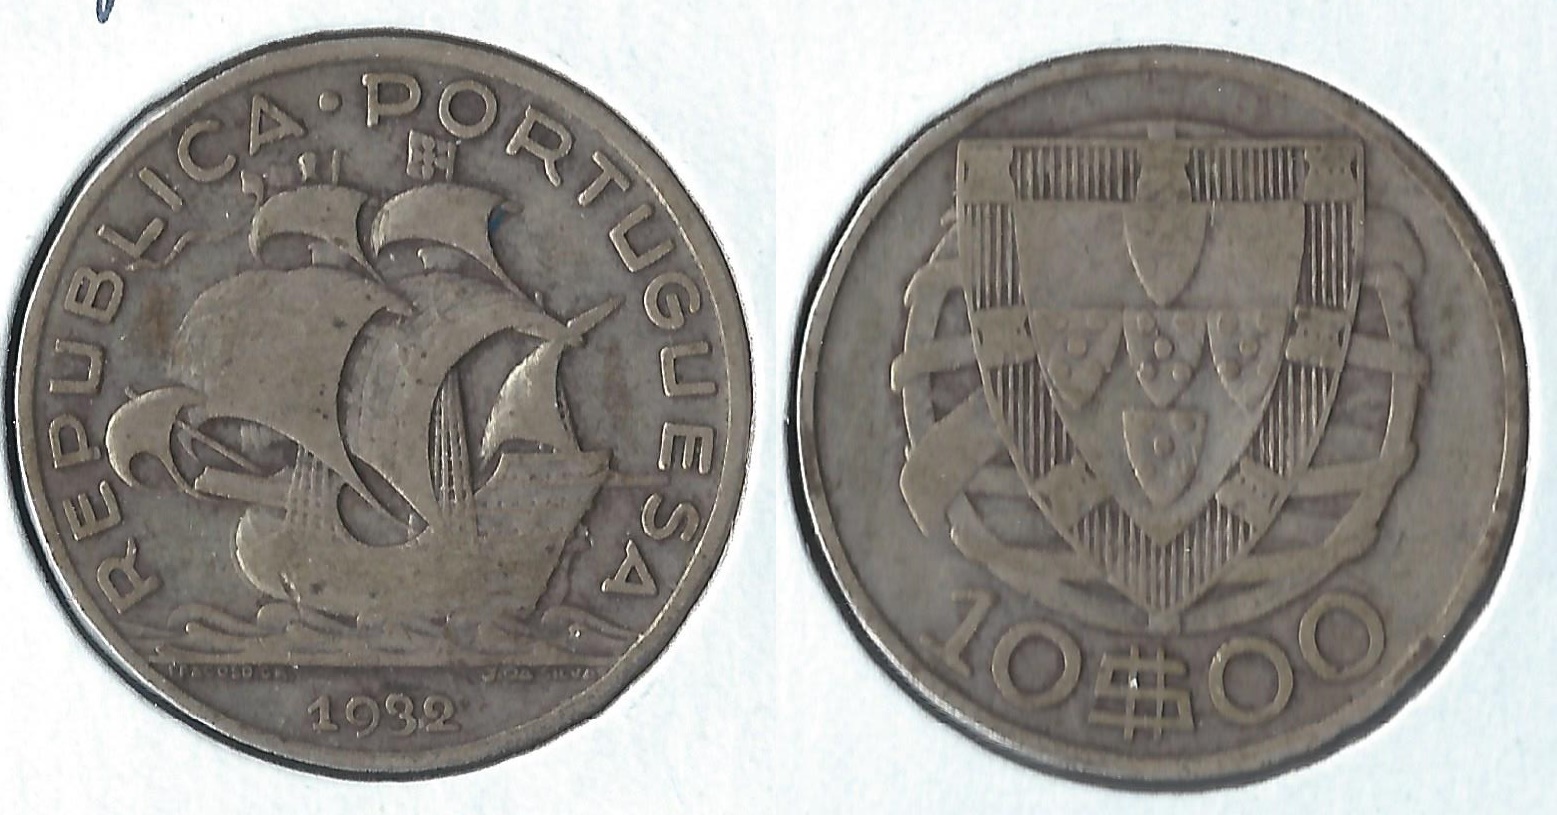 1932 portugal 10 escudos.jpg